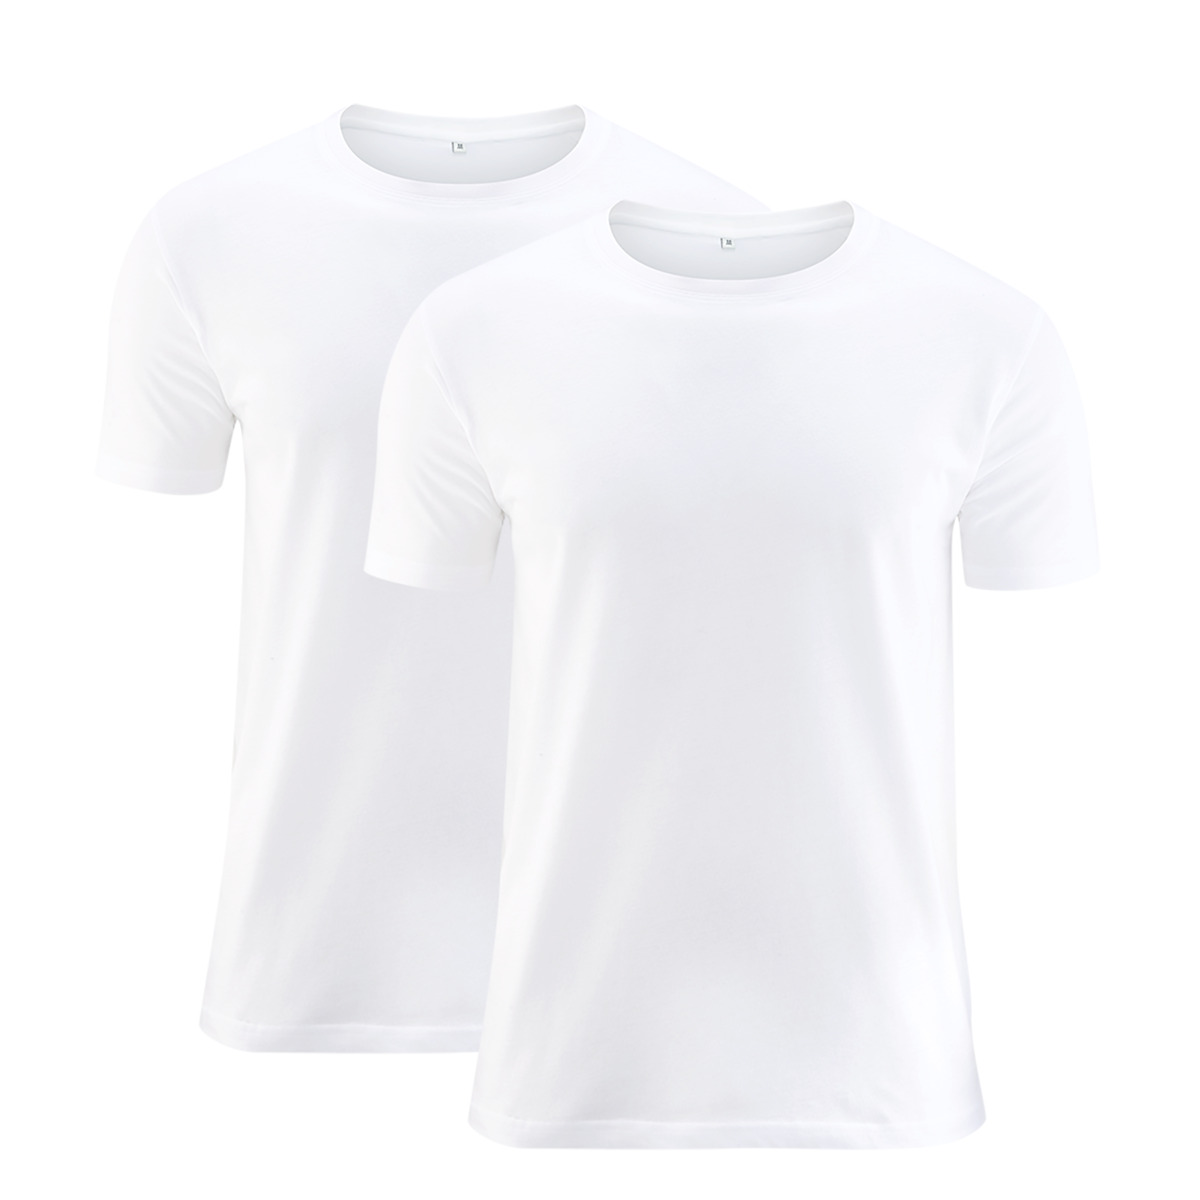 Weiß T-Shirt, 2er-Pack, 